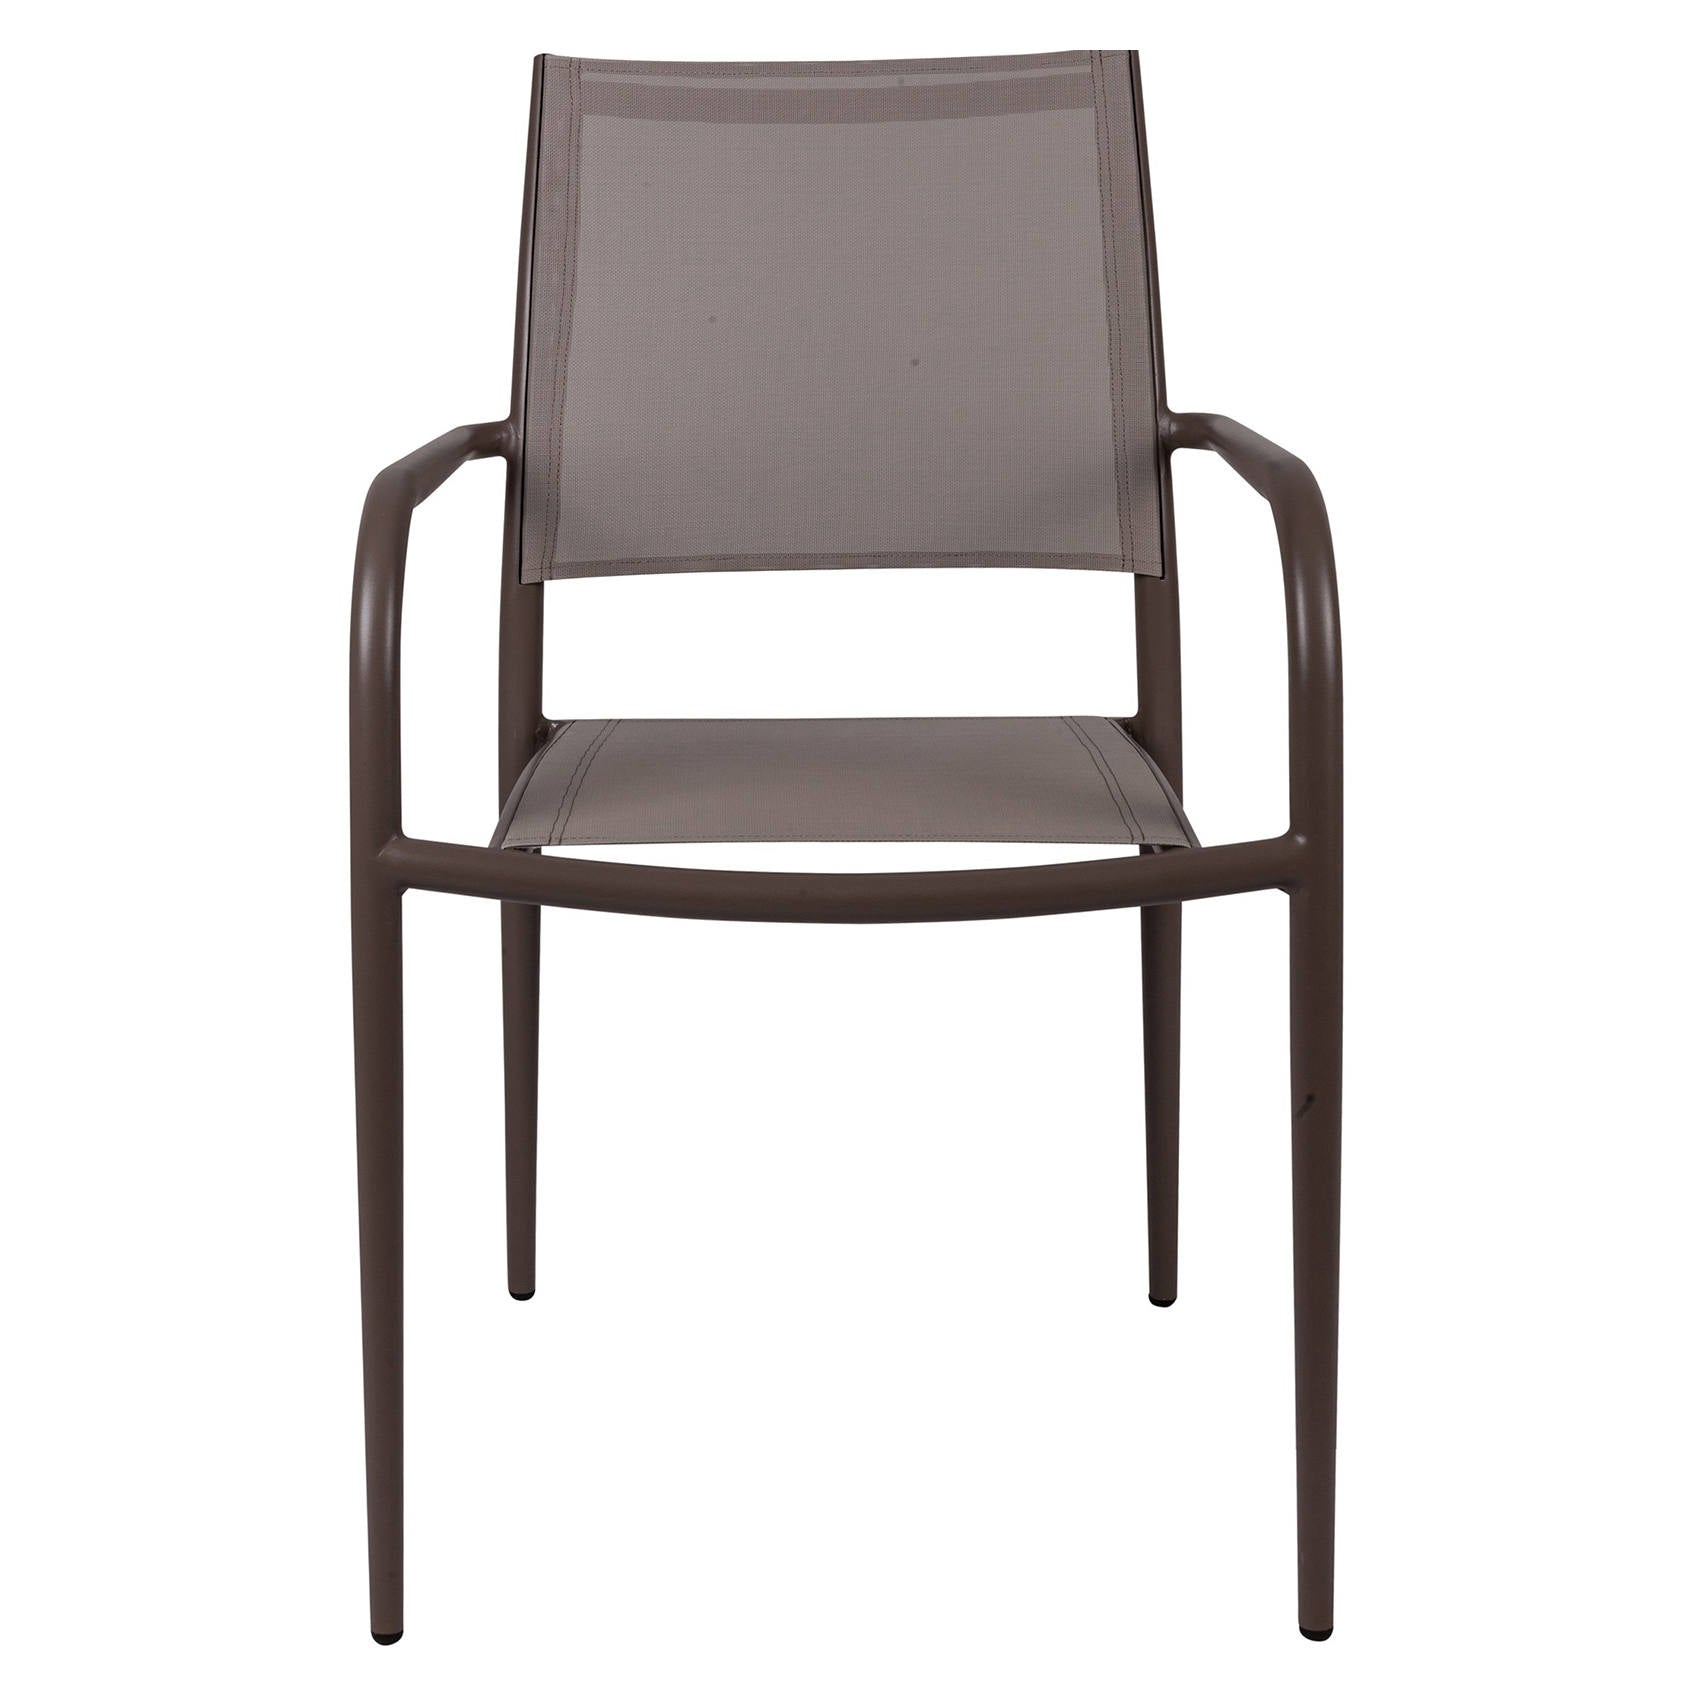 Sedia impilabile in alluminio e textilene, colore marrone, cm 56 x 62 x h85